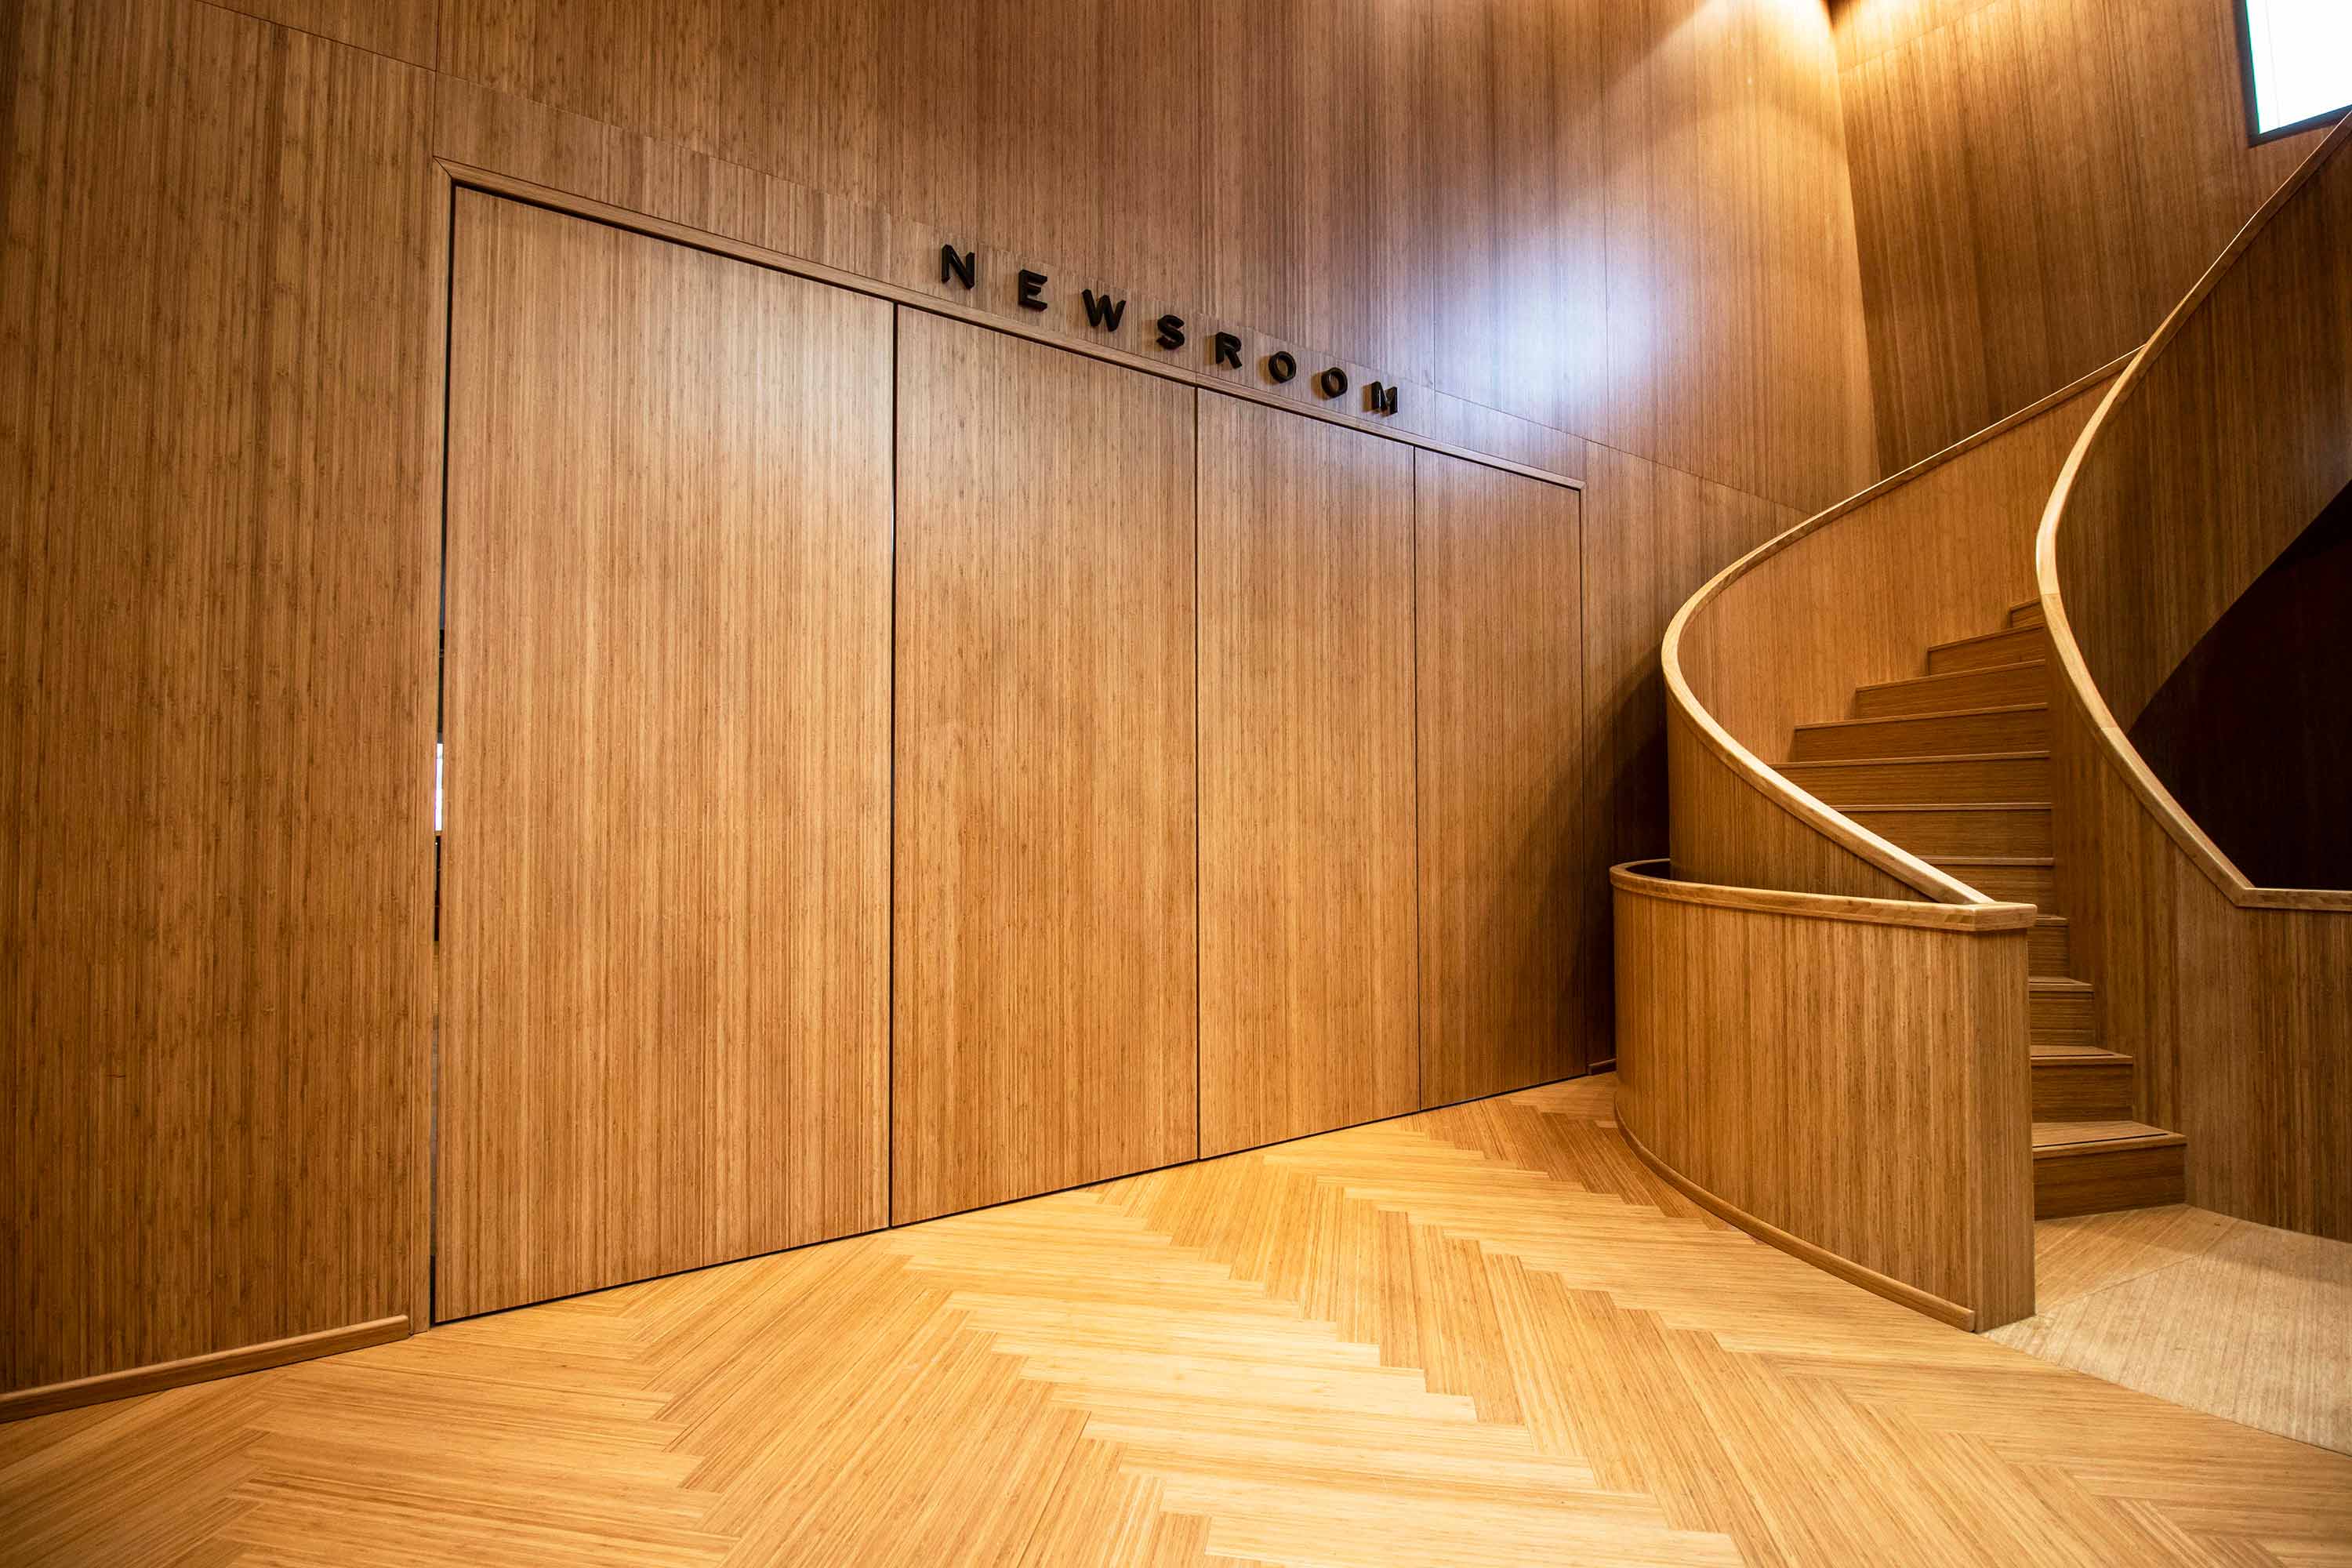 258.4-Groninger-Forum-bamboo-pivot-doors-designed-by-NL-Architects---FritsJurgens-pivot-hinges-Inside.jpg